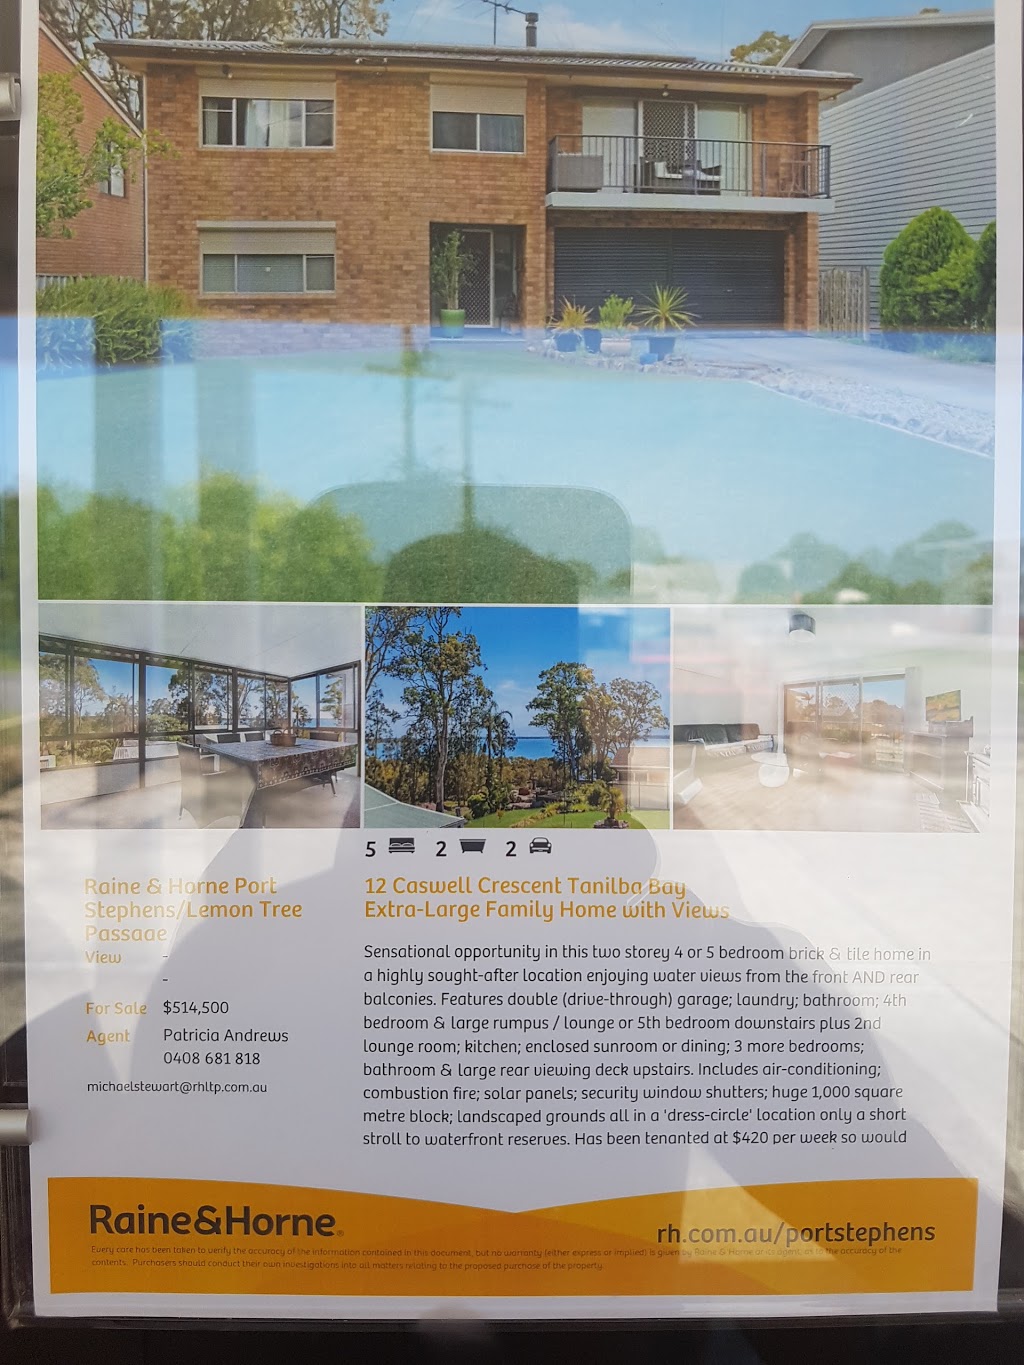 Raine & Horne Port Stephens/Lemon Tree Passage | real estate agency | 1/77 President Wilson Walk, Tanilba Bay NSW 2319, Australia | 0249824519 OR +61 2 4982 4519